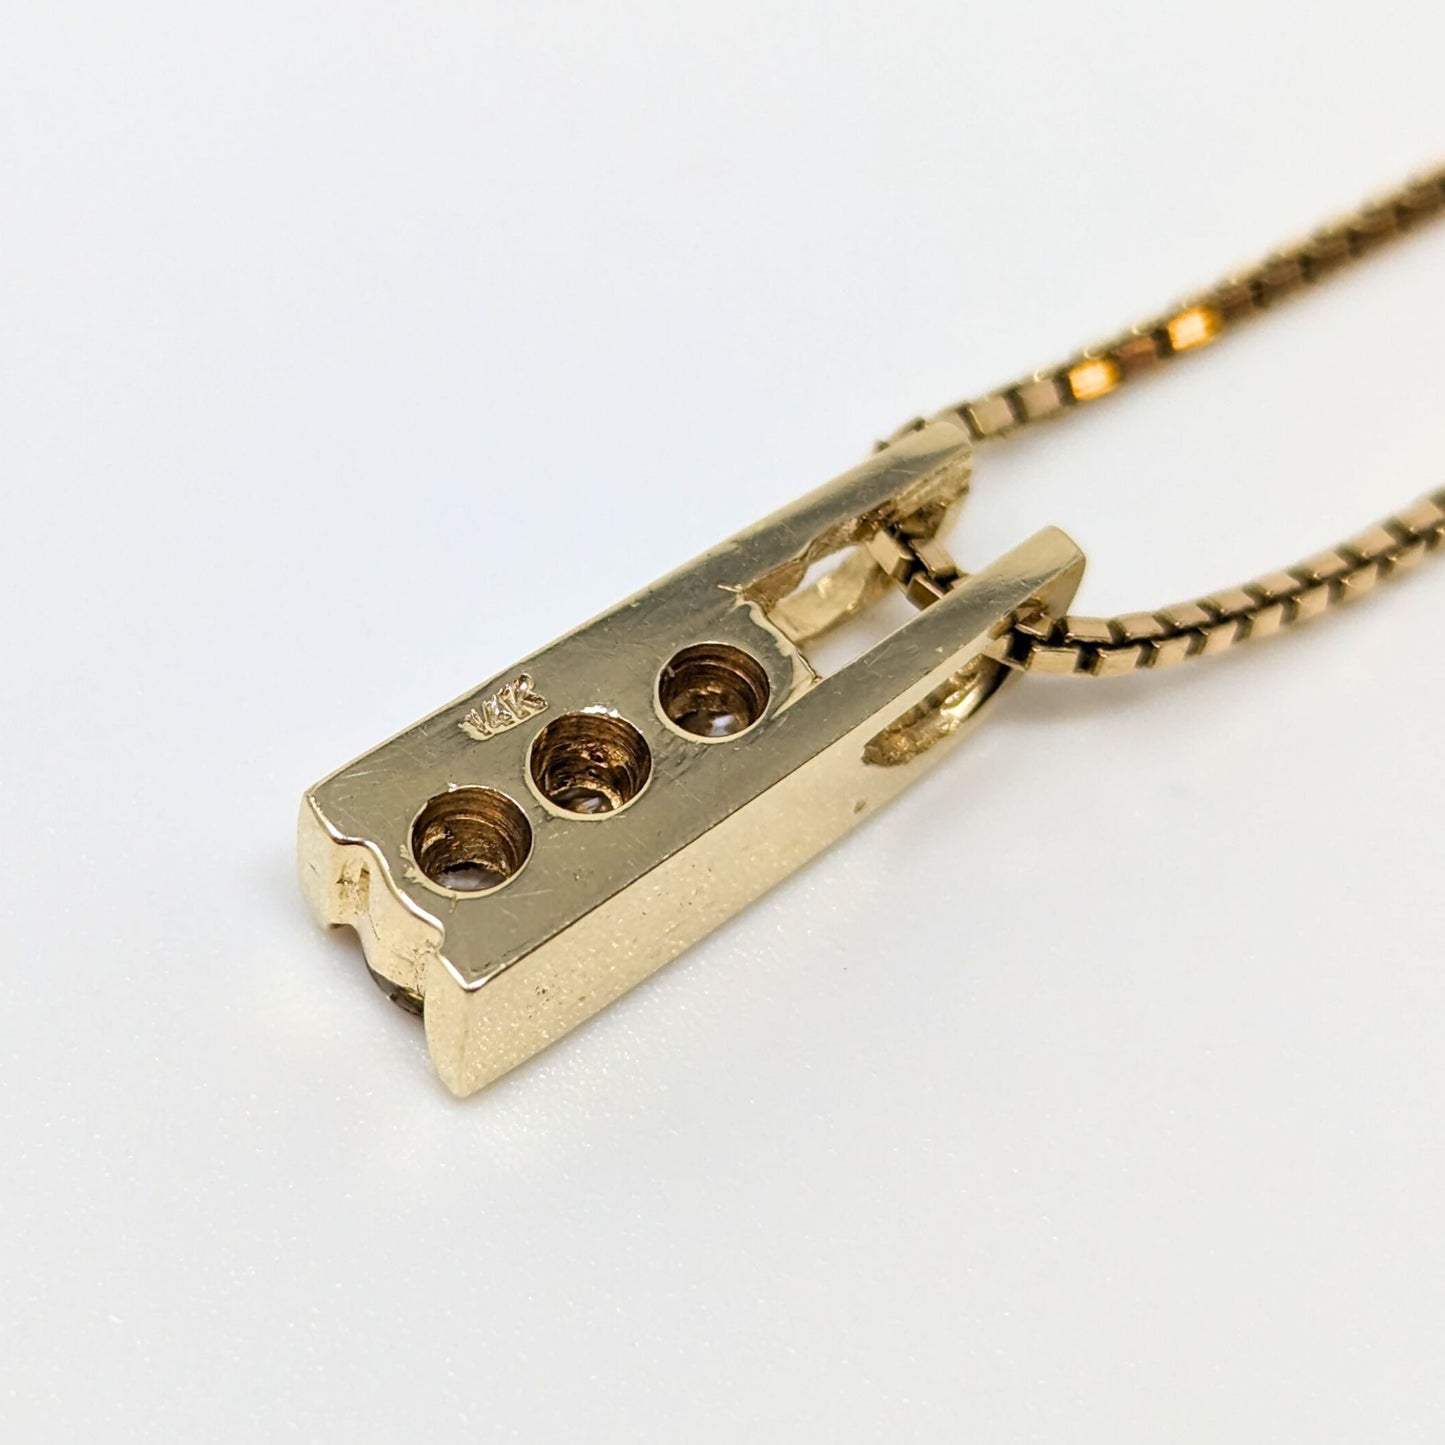 14K Gold Italian 3 Diamond Necklace (0.5 TCW)